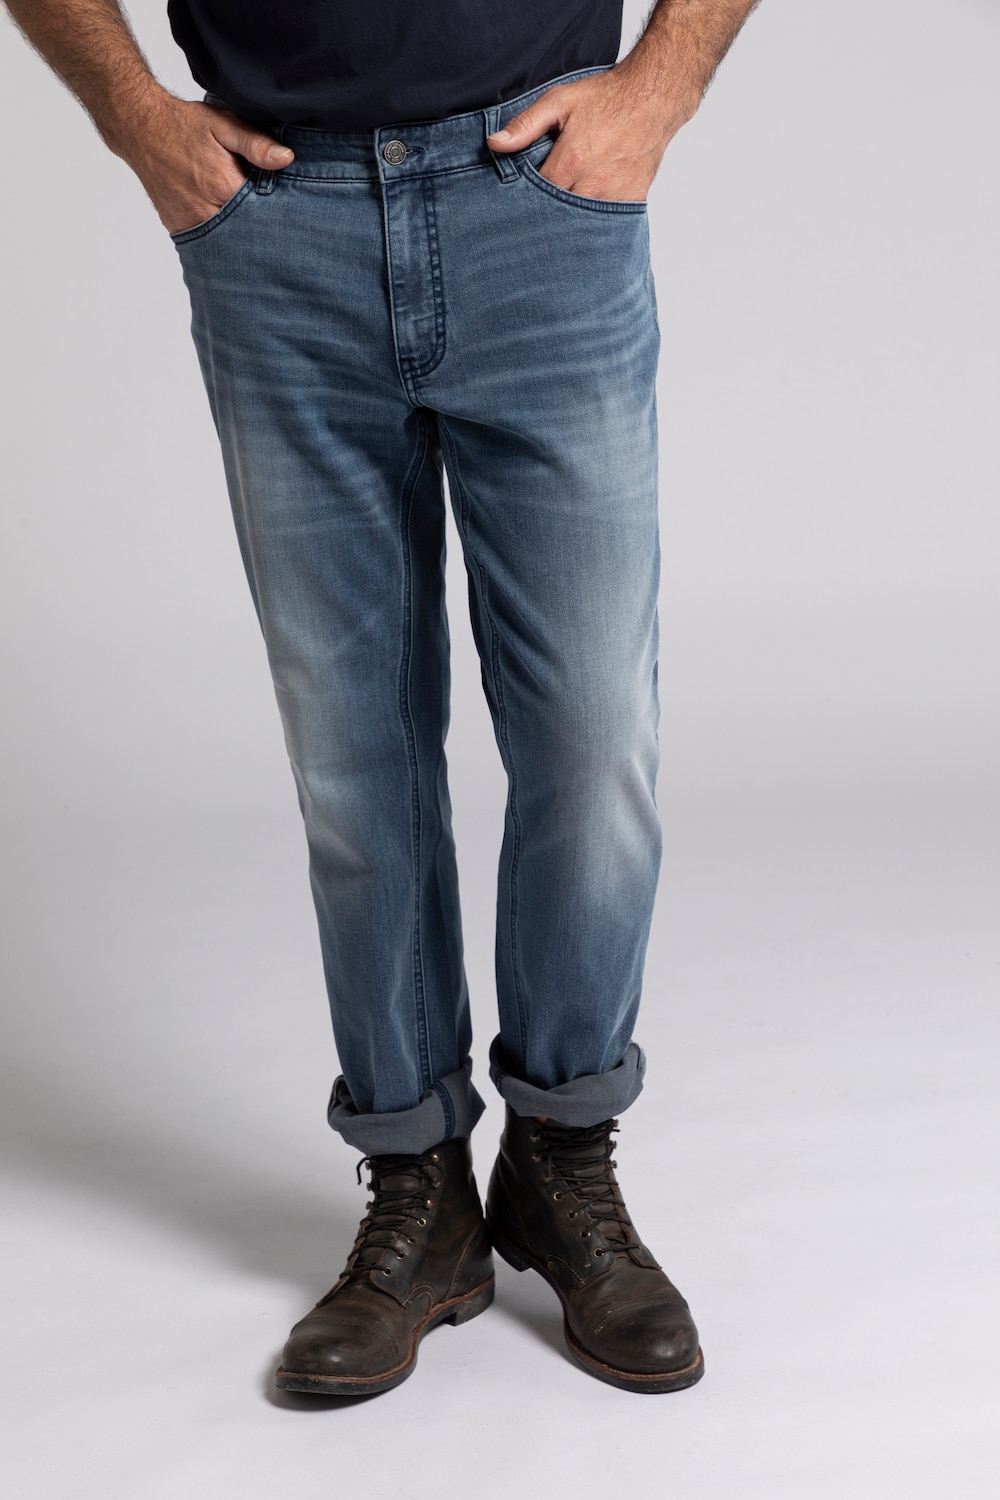 Grote Maten jeans, Heren, grijs, Maat: 58, Katoen/Polyester, JP1880